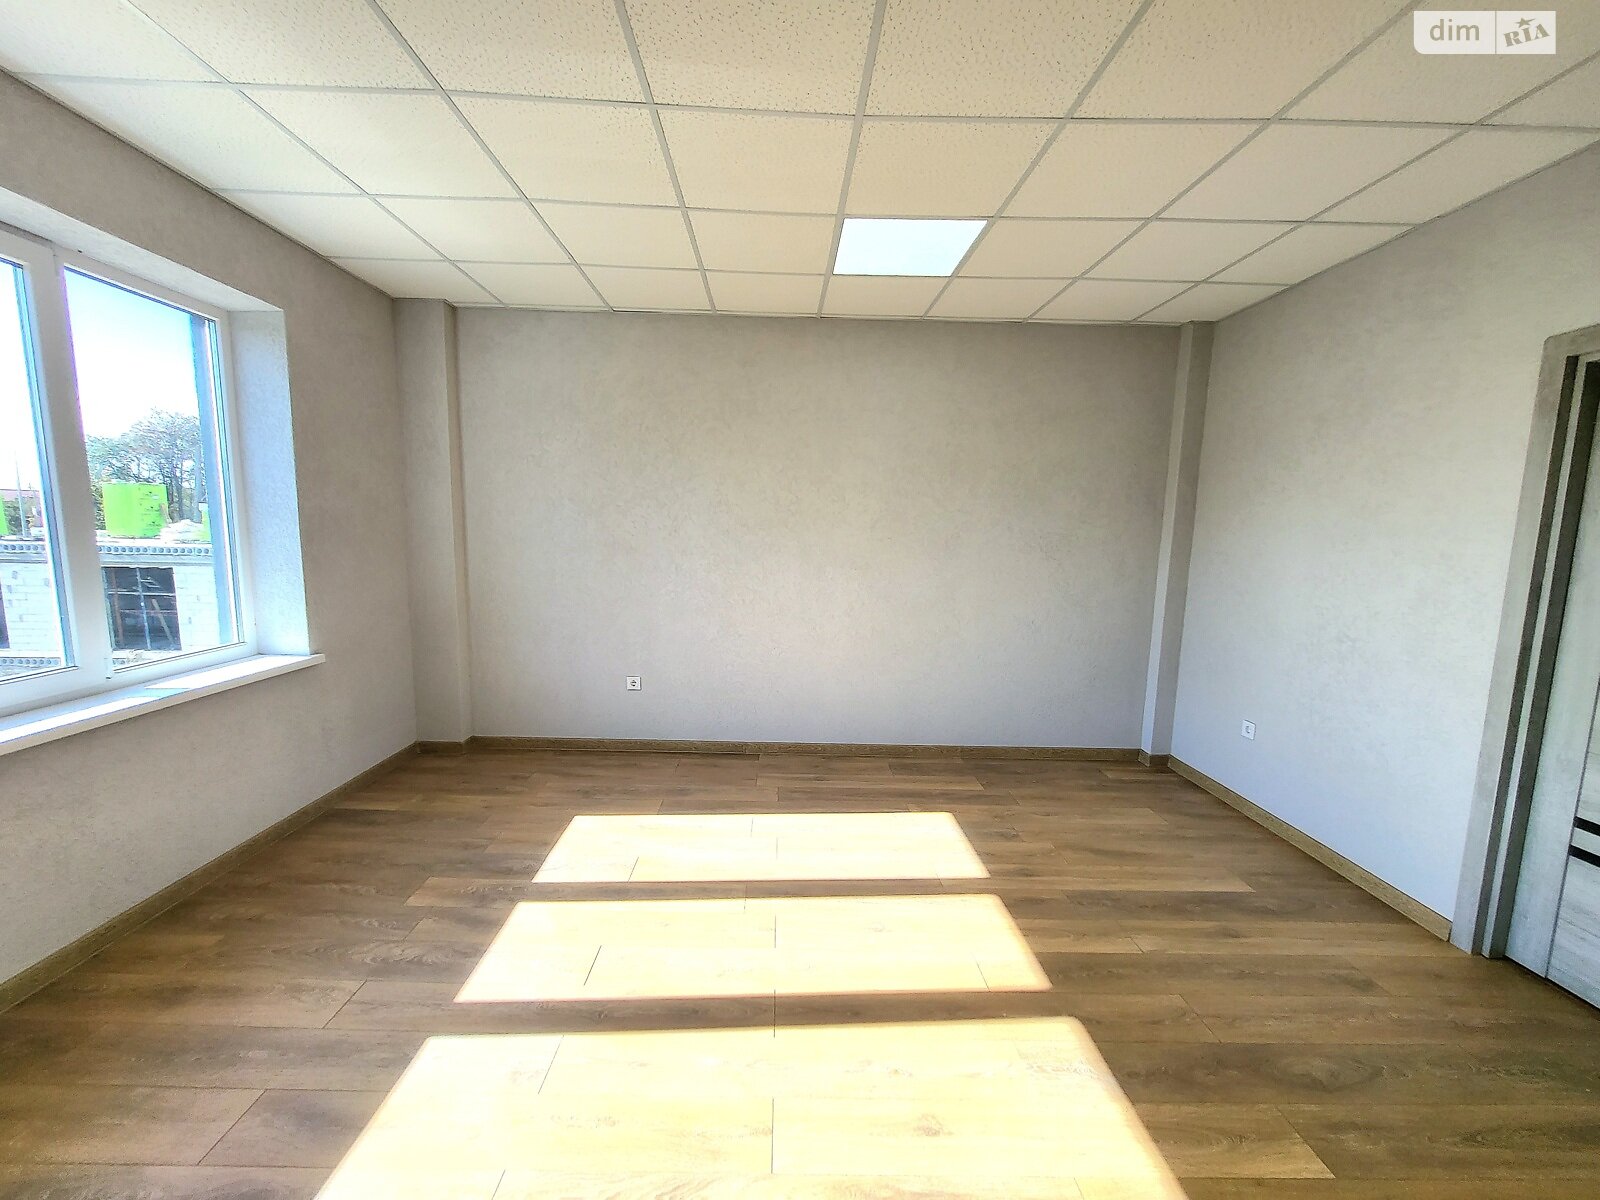 Аренда офисного помещения в Якушинцах, Хмельницьке шосе, помещений - 12, этаж - 1 фото 1